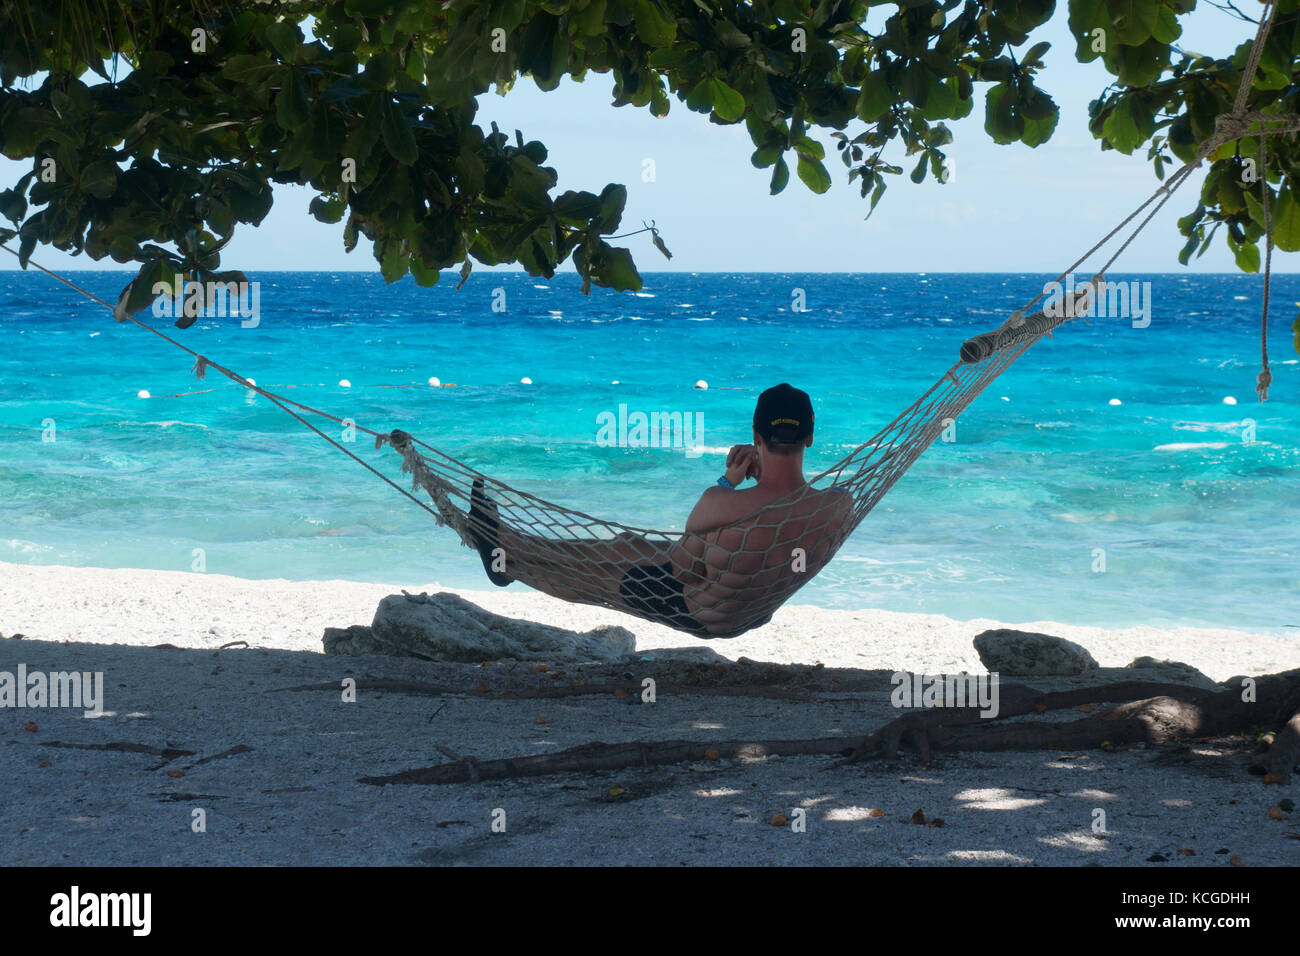 Philippines plage, île de Cebu - un touriste relaxant dans un hamac en vacances, Cebu, Philippines, Asie Banque D'Images